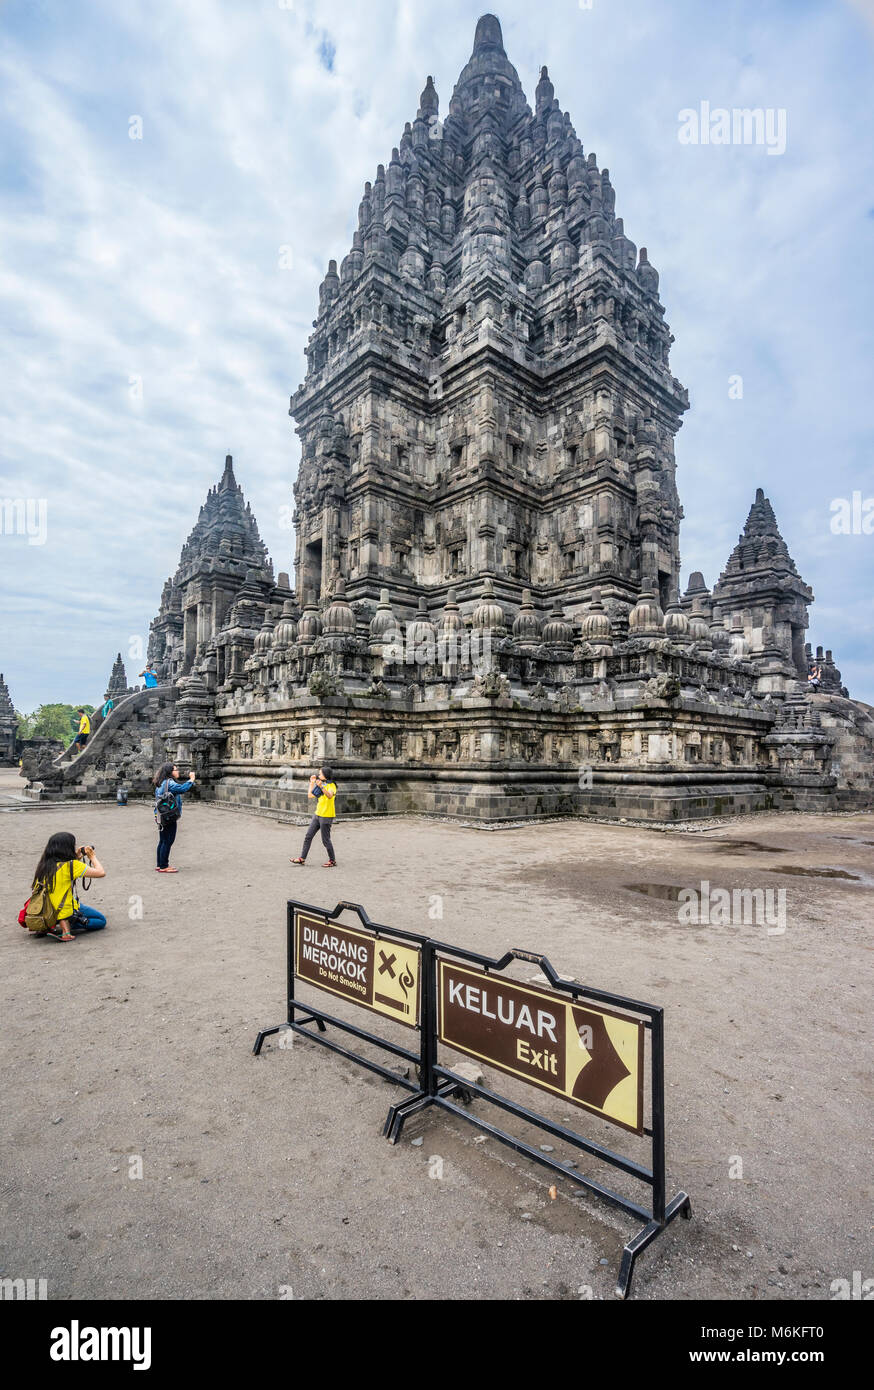 Indonesien, Central Java, Ansicht der Shiva Tempel, das höchste und größte Struktur in der Mitte des 9. Jahrhunderts Hindu Tempel Prambanan Komplex Stockfoto